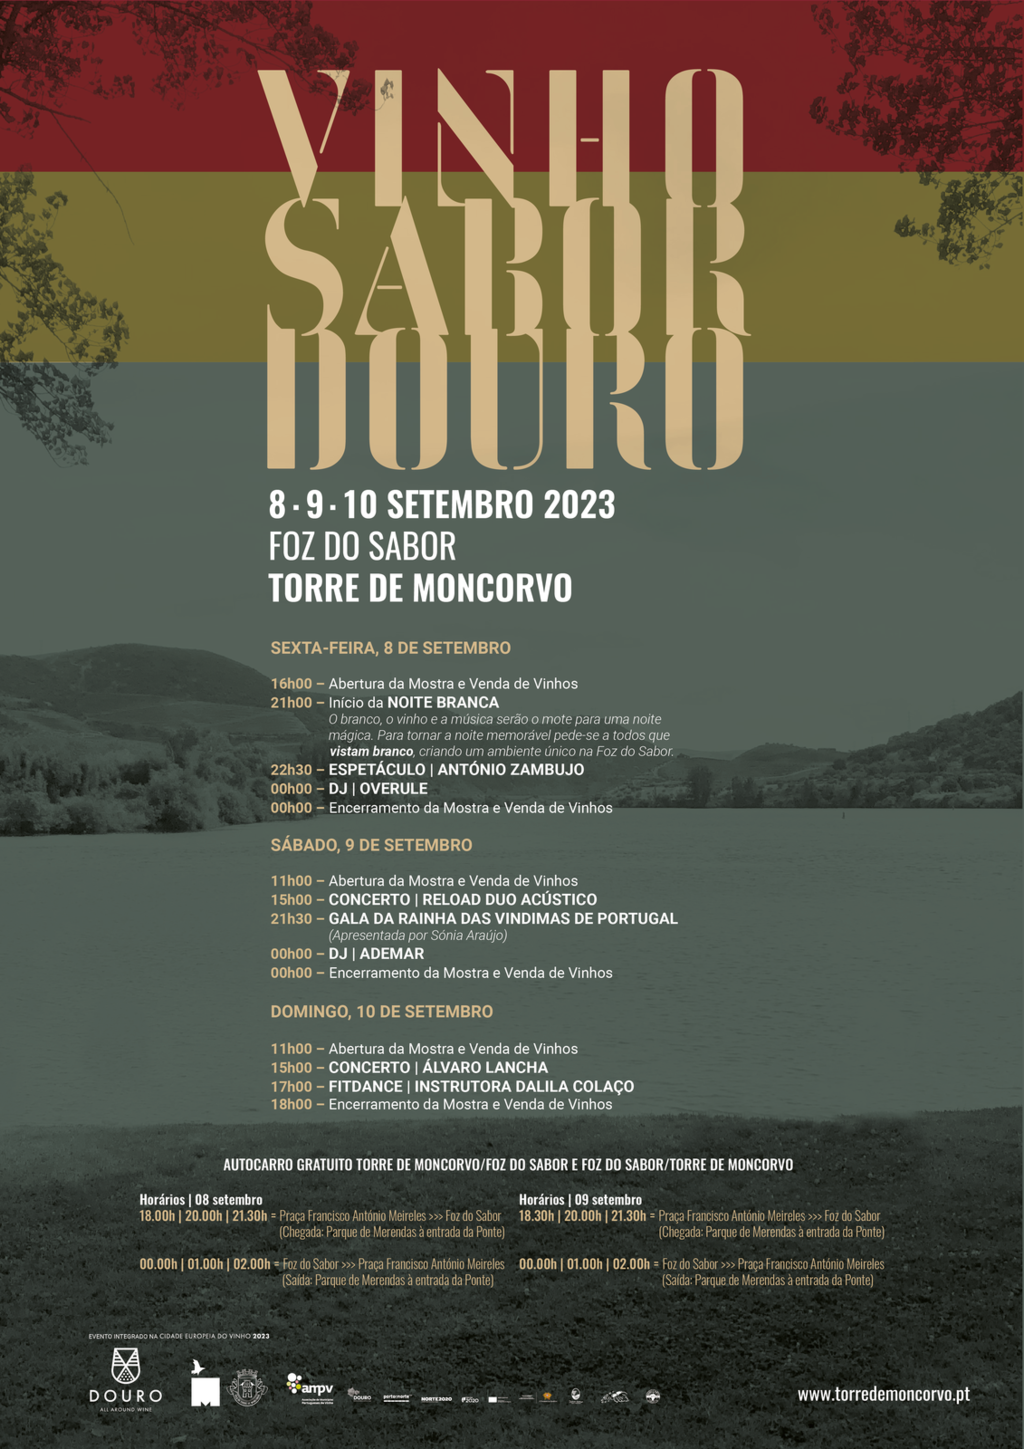 Vinho Sabor Douro regressa este fim de semana à Foz do Sabor